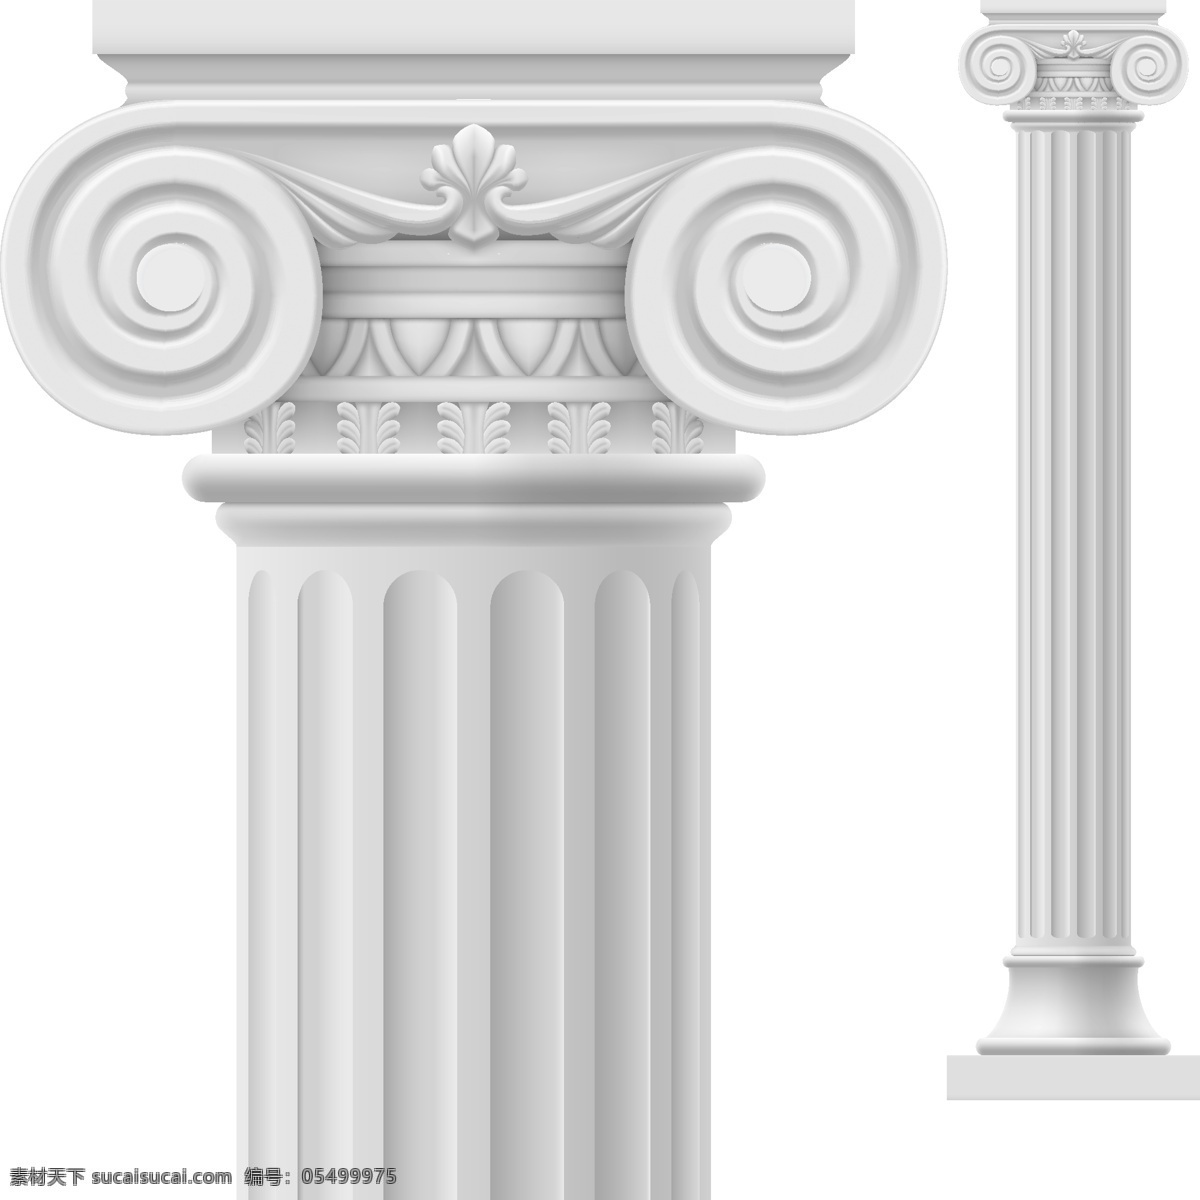 矢量 罗马柱 环境设计 建筑设计 罗马柱素材 矢量罗马柱 装饰素材